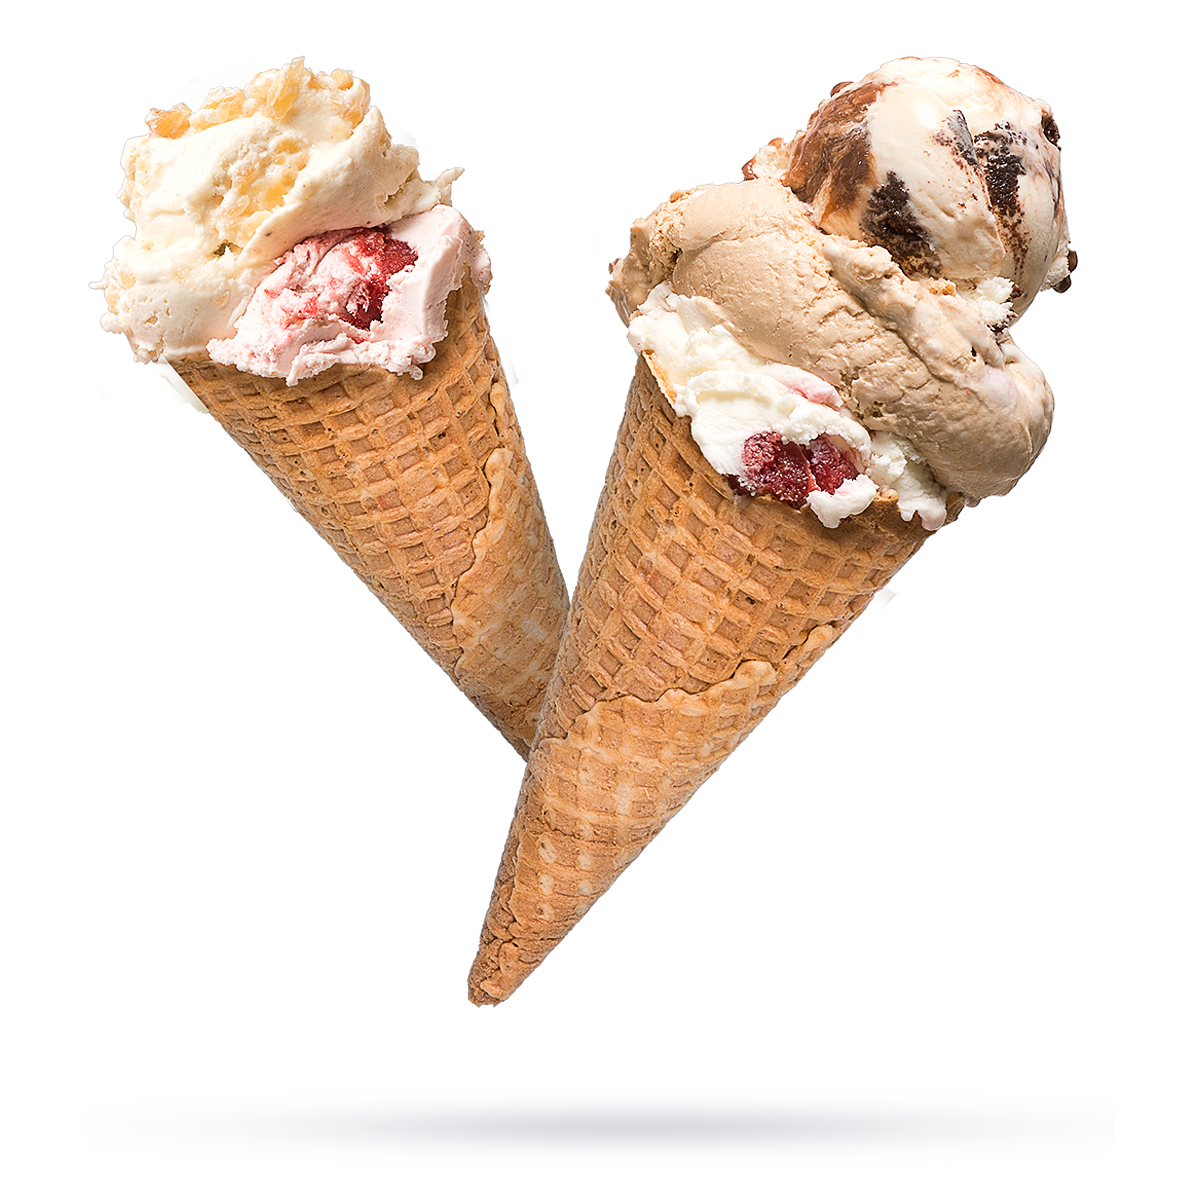 Jon's Scoop | Personalized Ice Cream Scoop